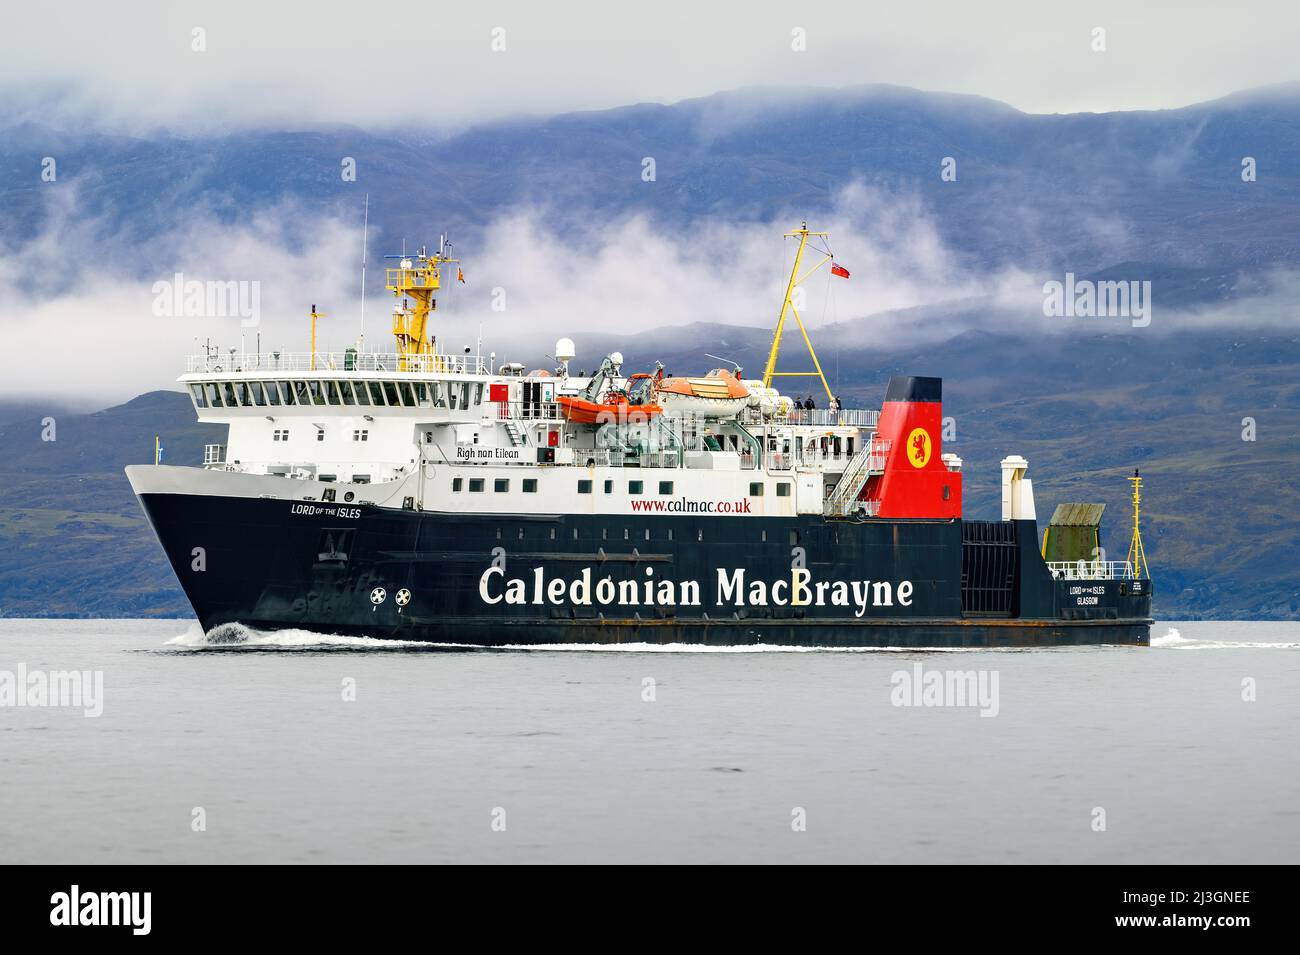 Lord of the Isles est un ferry exploité par Caledonian MacBrayne sur des routes interinsulaires et continentales en Écosse - octobre 2021. Banque D'Images